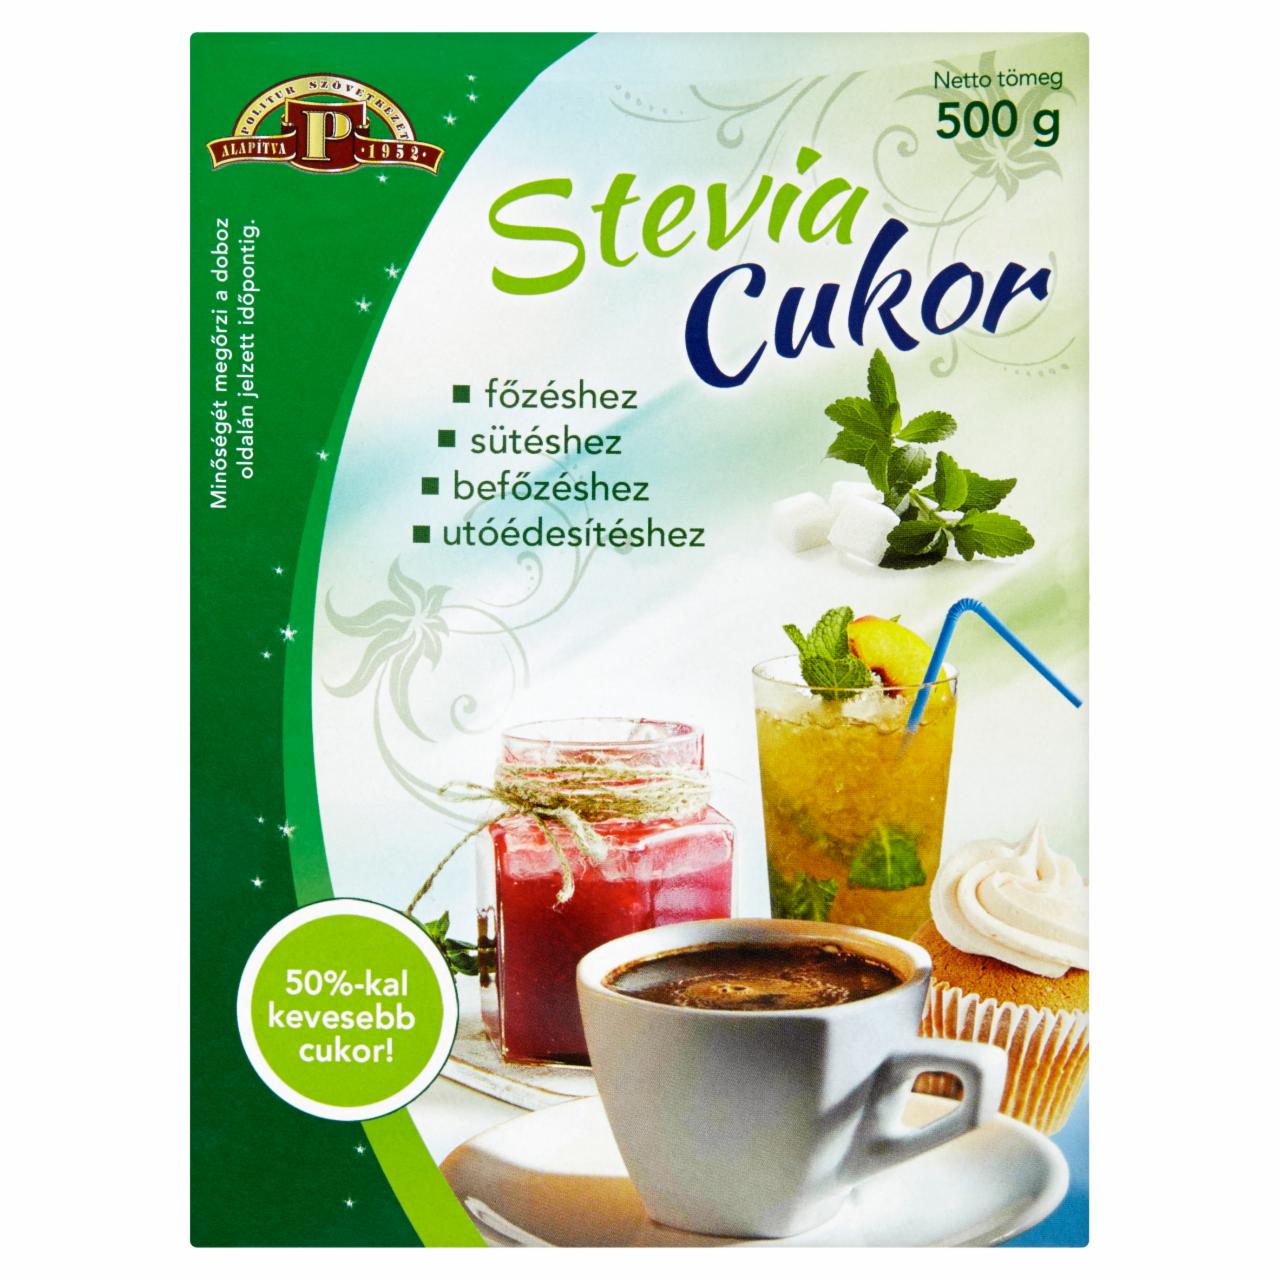 Képek - Politur Stevia + Cukor kristálycukor és stevia tartalmú édesítőszer 500 g